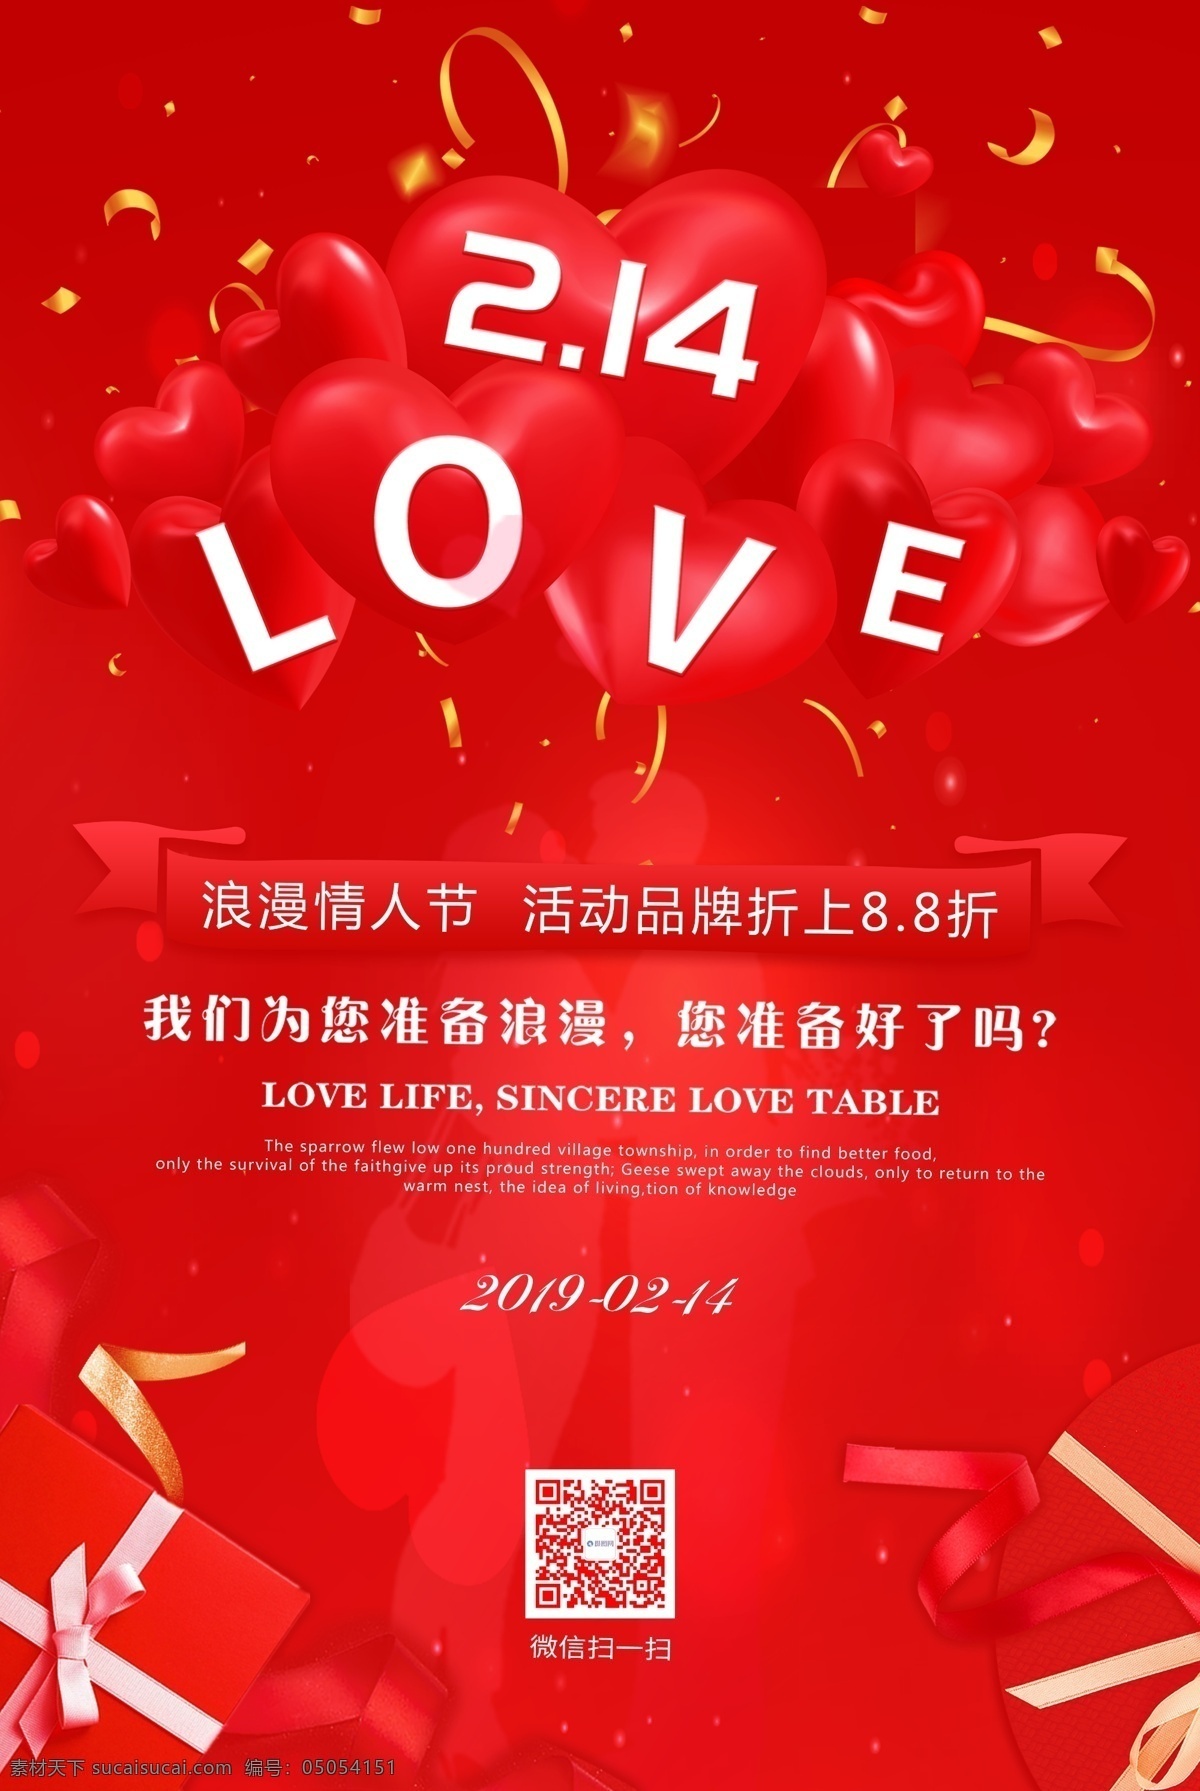 红色 浪漫 2.14 love 情人节 节日 节日海报 爱心 气球 欢快气氛